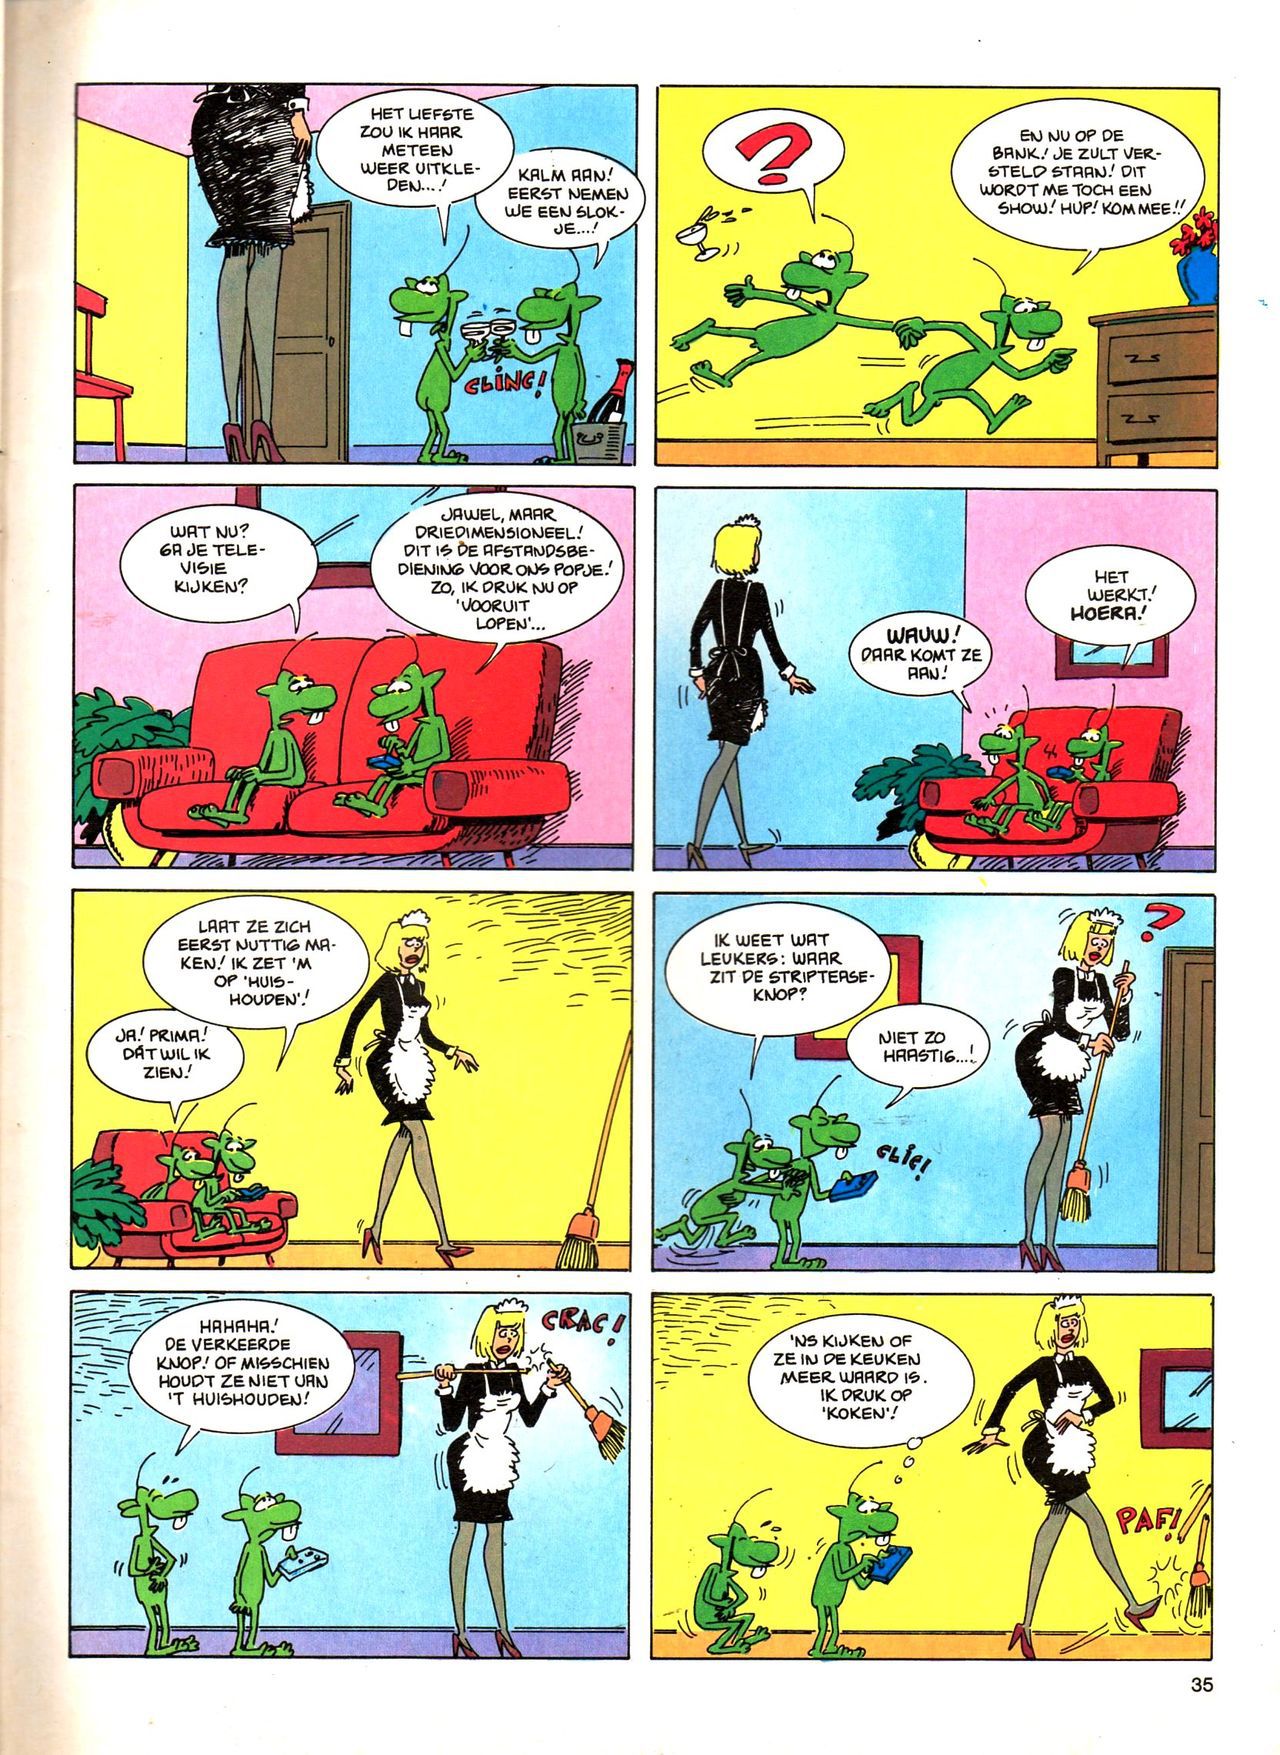 Het Is Groen En Het.. - 04 - Mag Ik Die Ballen.. OH, PARDON! (Dutch) Een oude humoristische serie van Pat Mallet 35